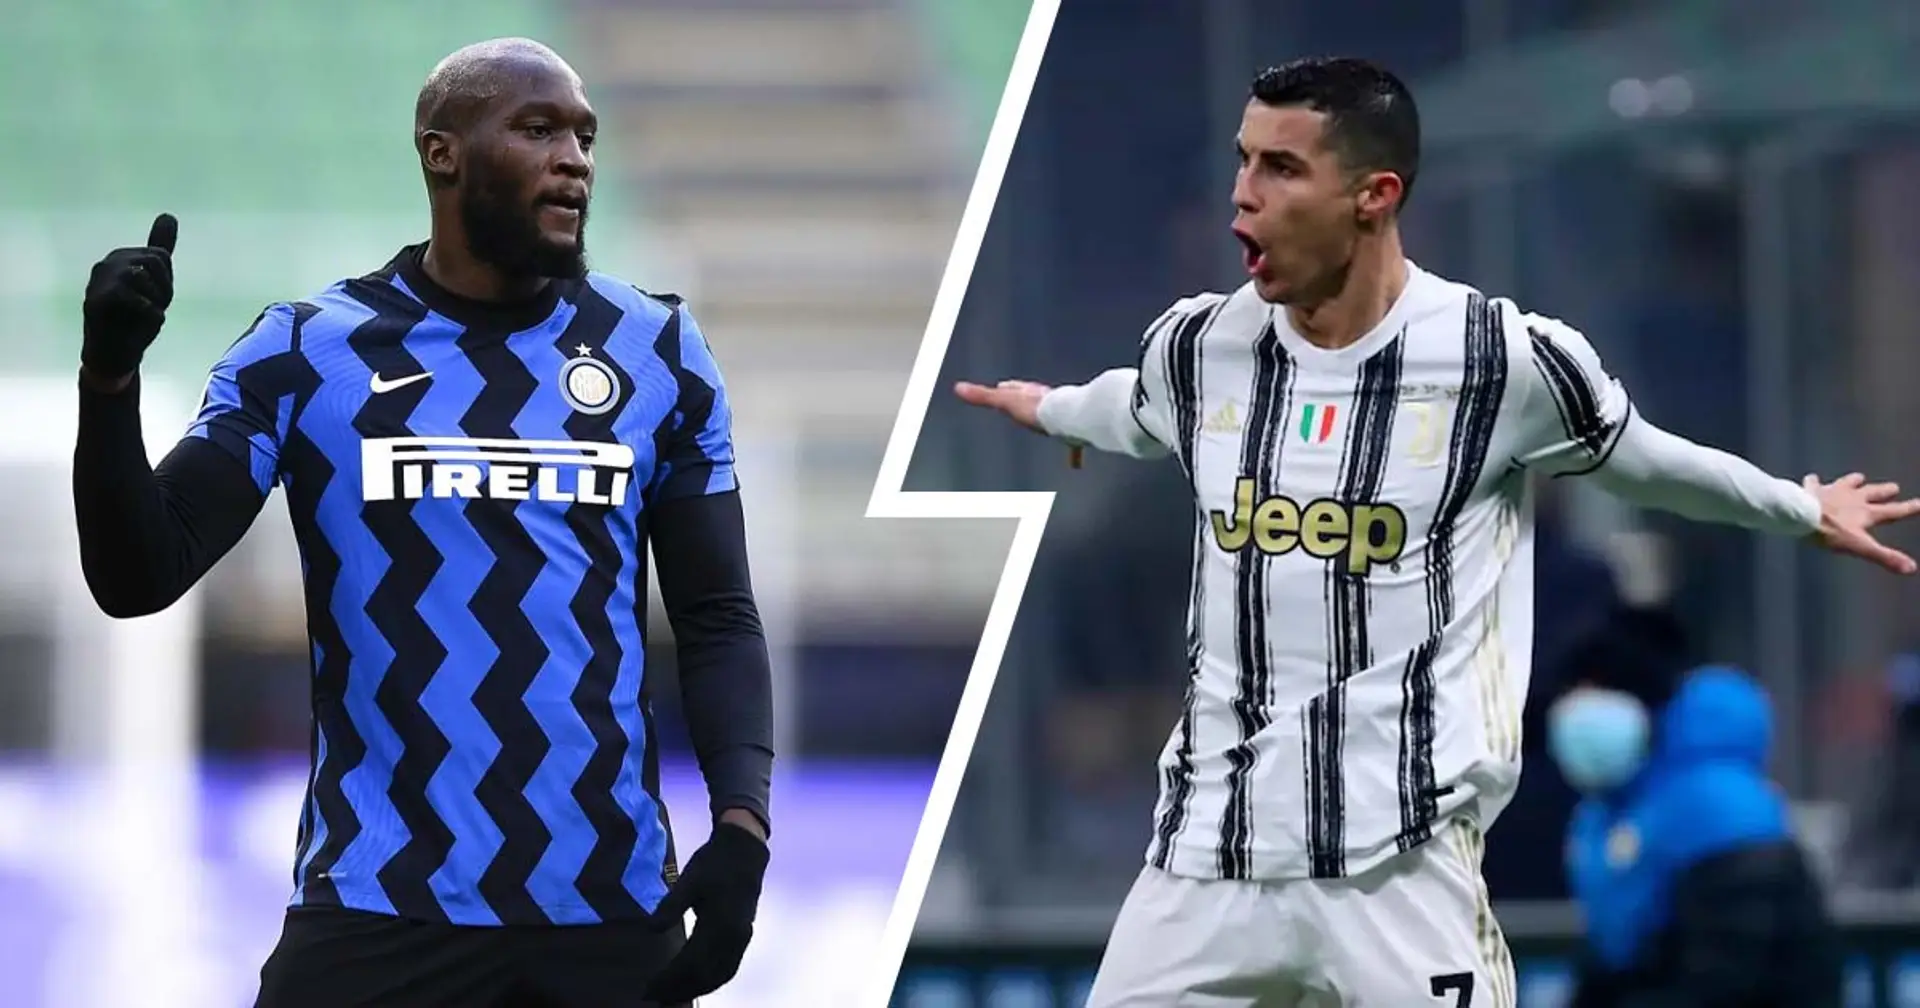 Classifica dei gol più assist in Serie A dal 2018-2019: primo Ronaldo, ci sono 2 giocatori dell'Inter